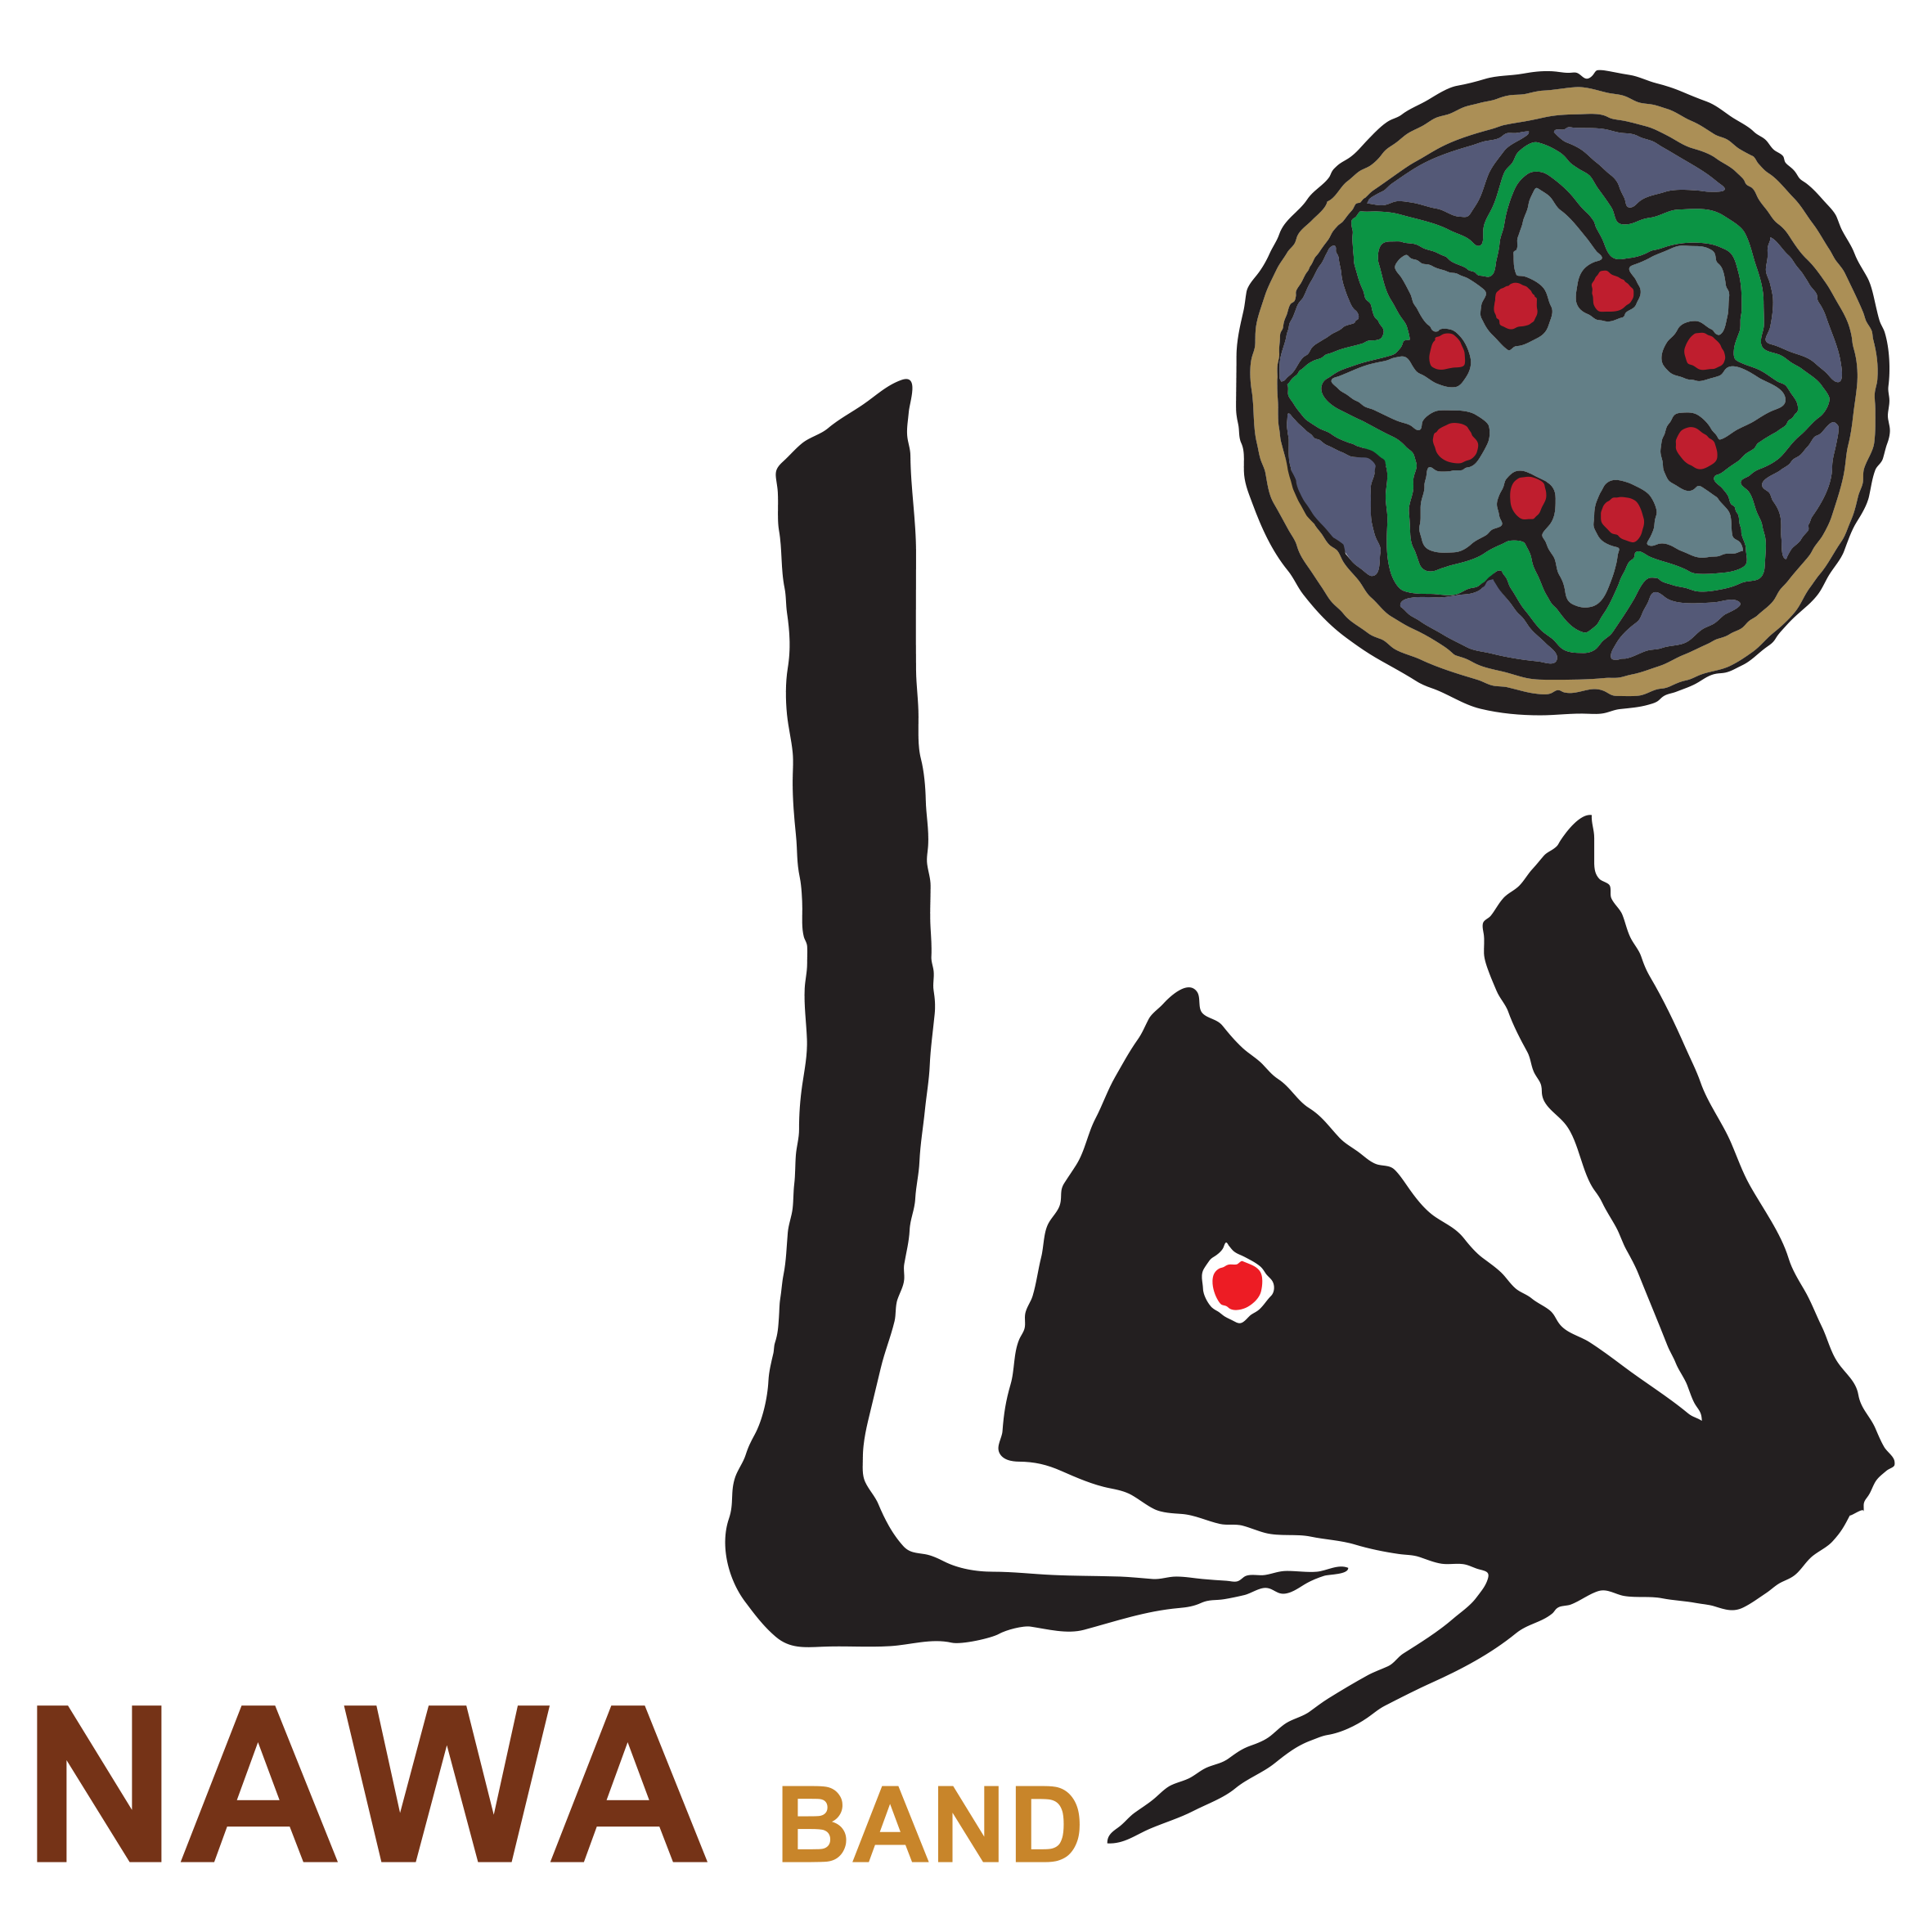 NAWA BAND